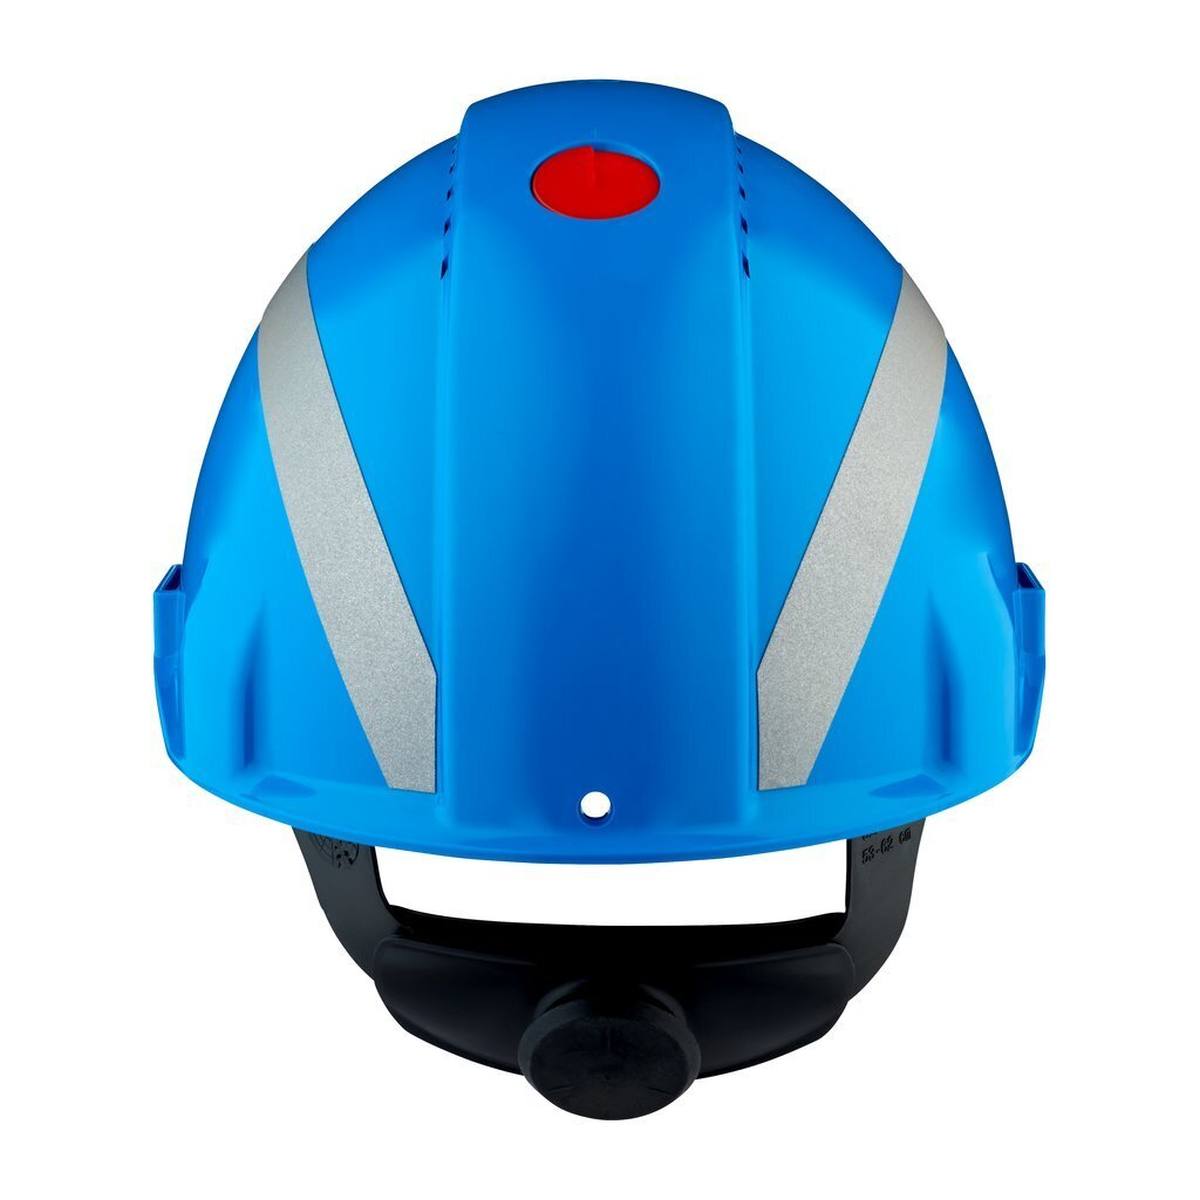 3M G3000 Schutzhelm mit UV-Indikator, blau, ABS, belüftet Ratschenverschluss, Kunststoffschweißband, Reflex-Aufkleber